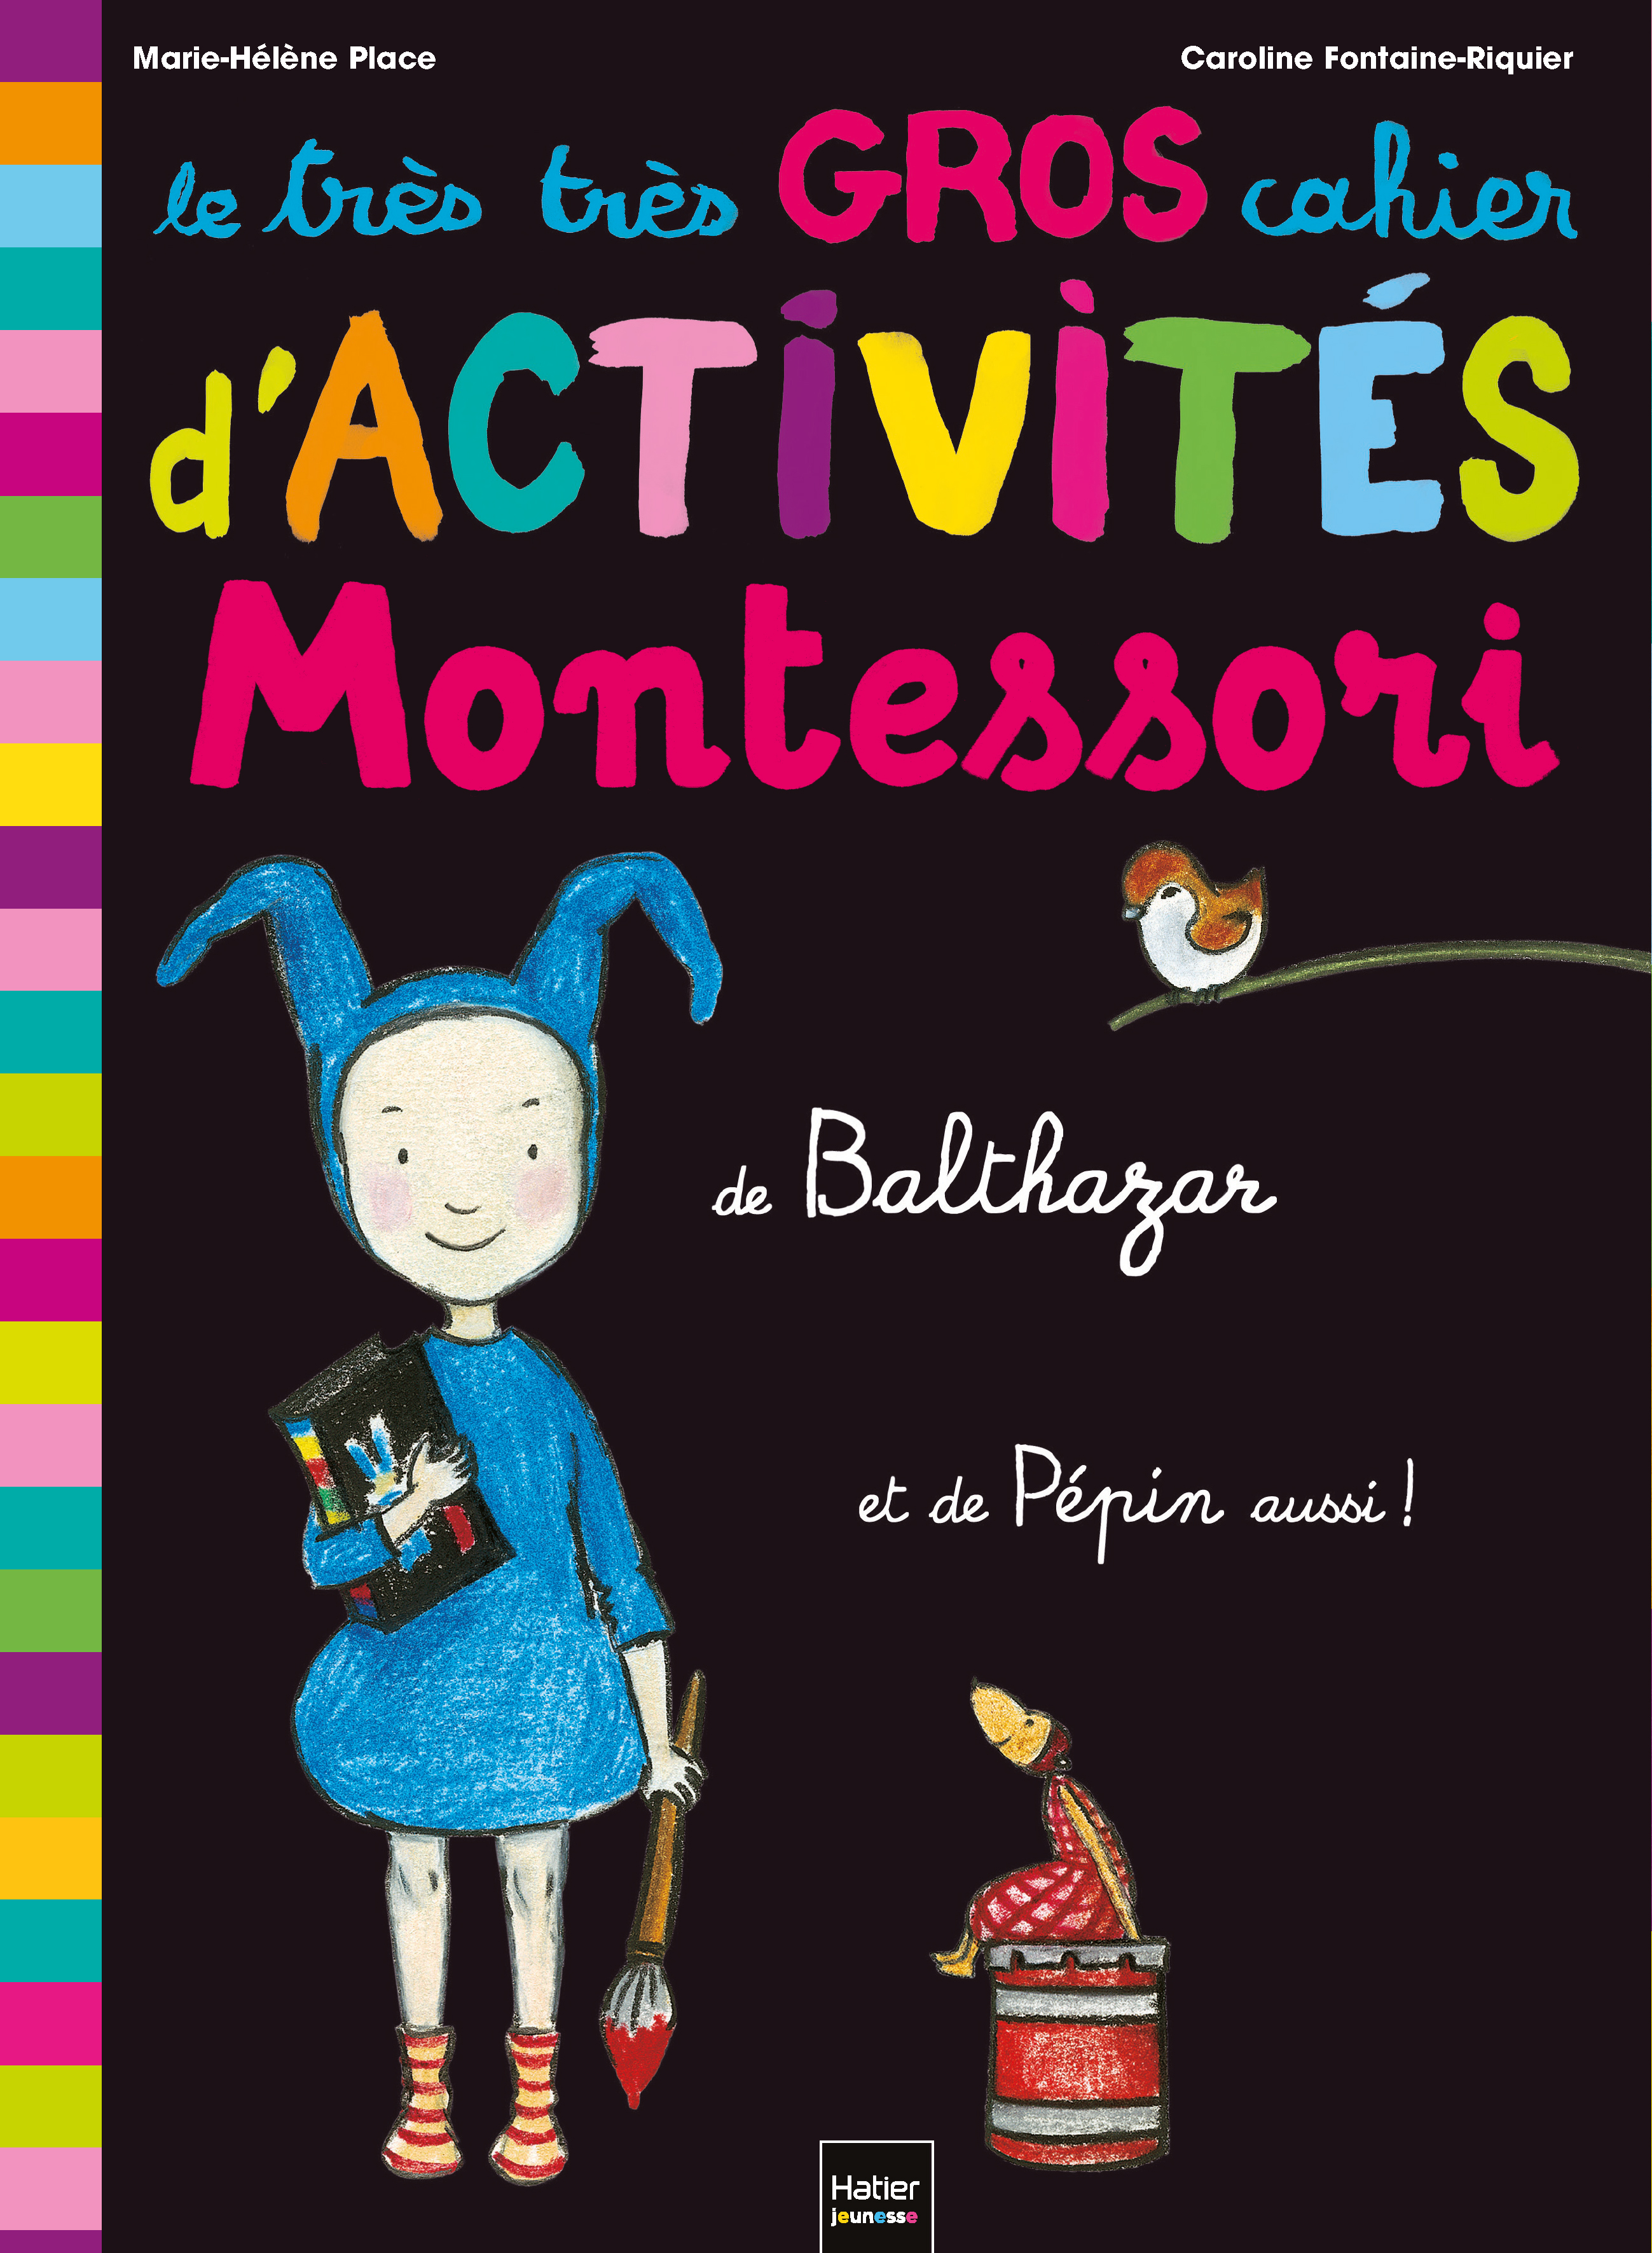 Couverture "Le très très gros cahier d'activités Montessori de Balthazar"